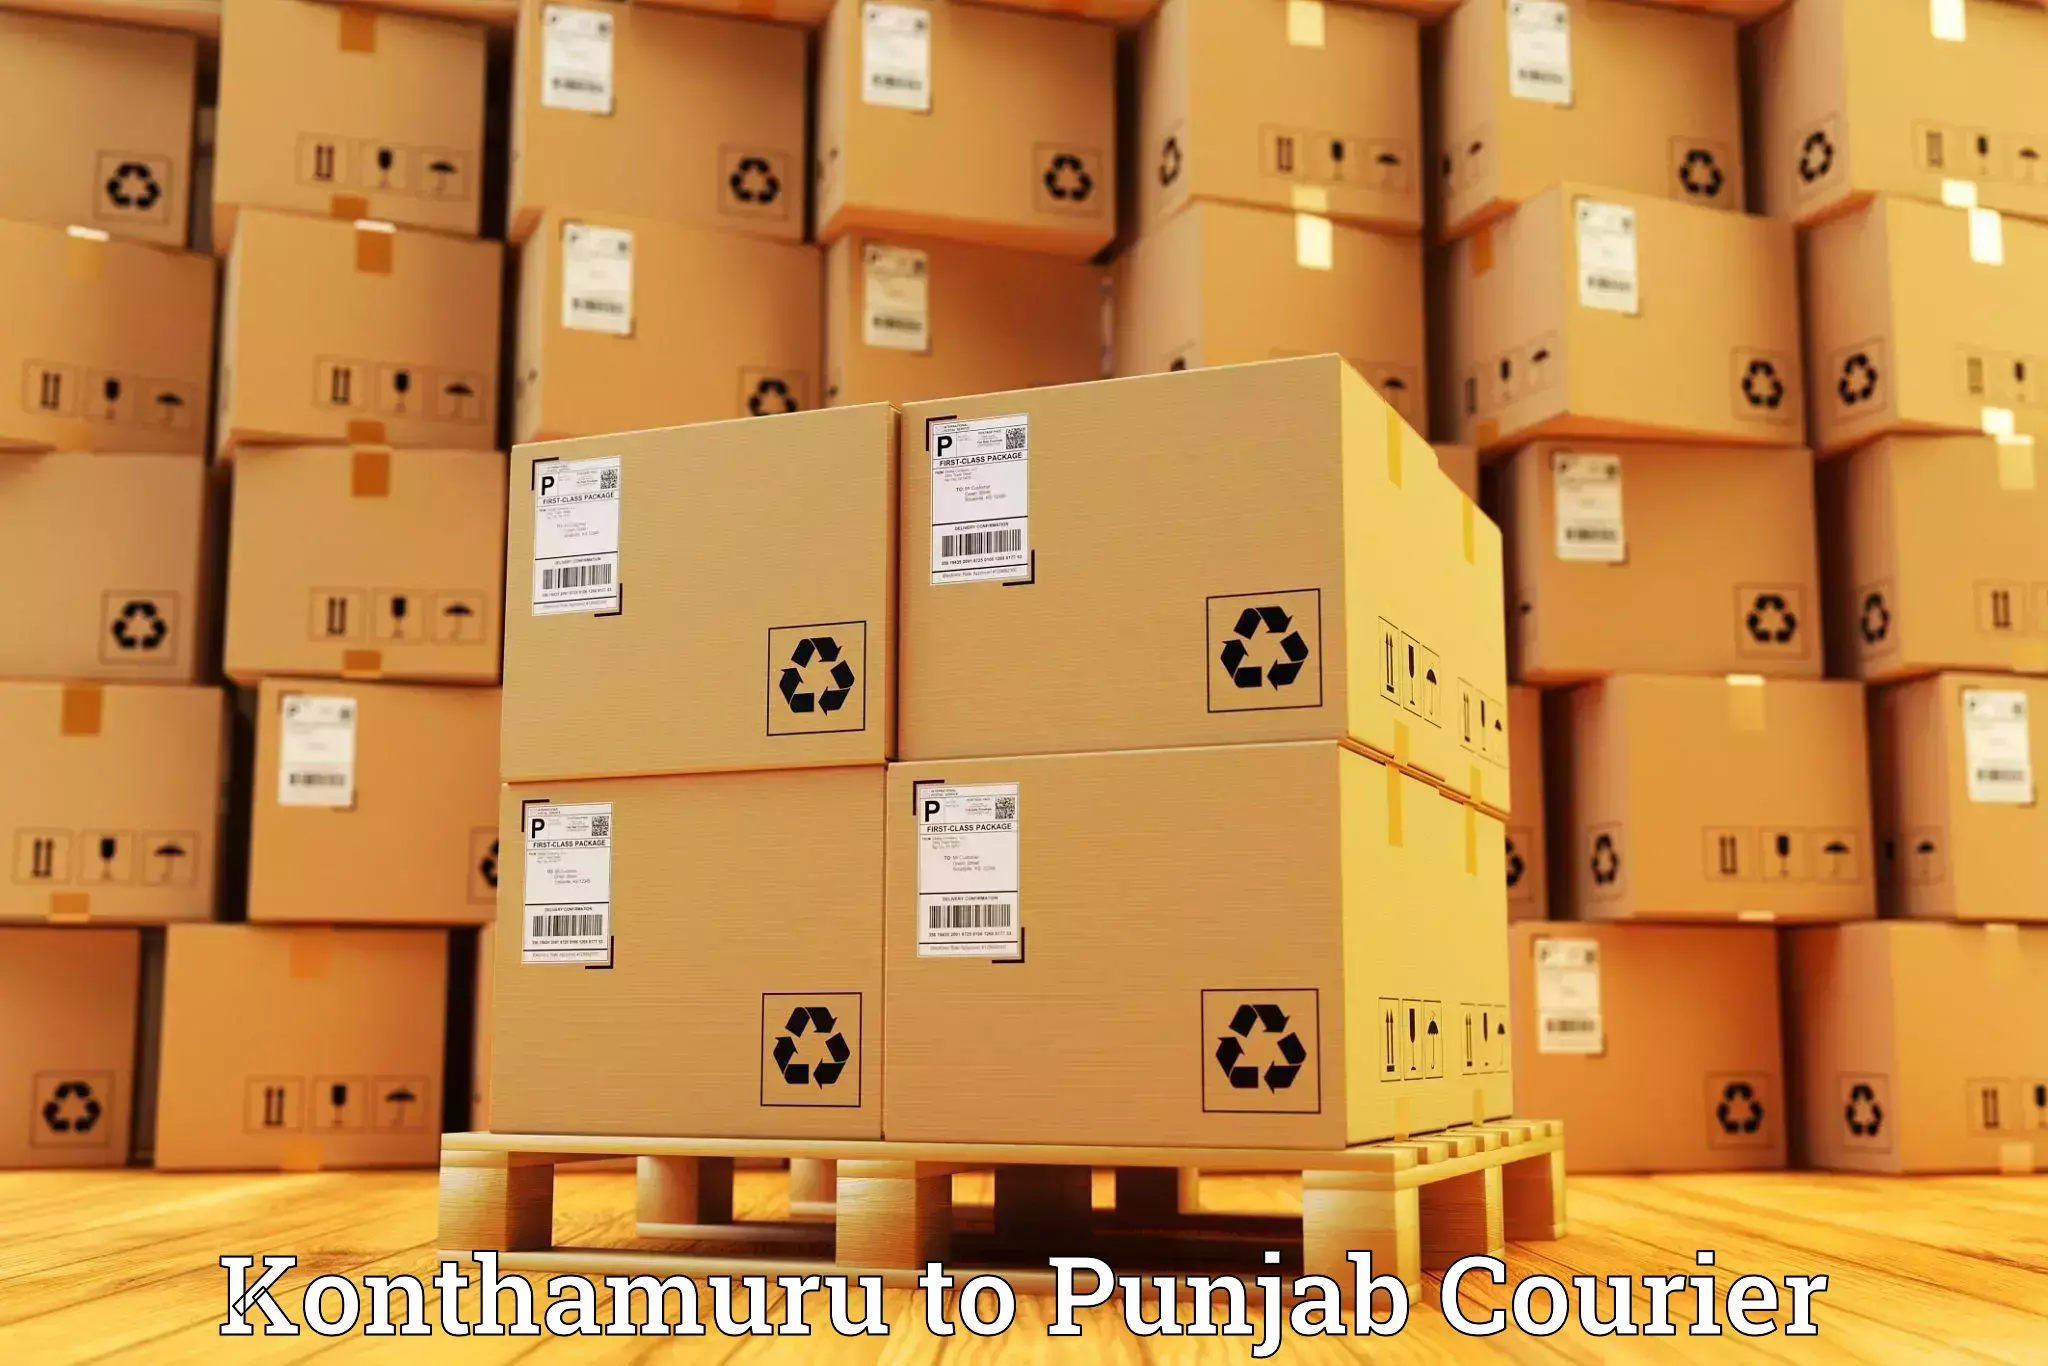 Multi-national courier services Konthamuru to Jalandhar